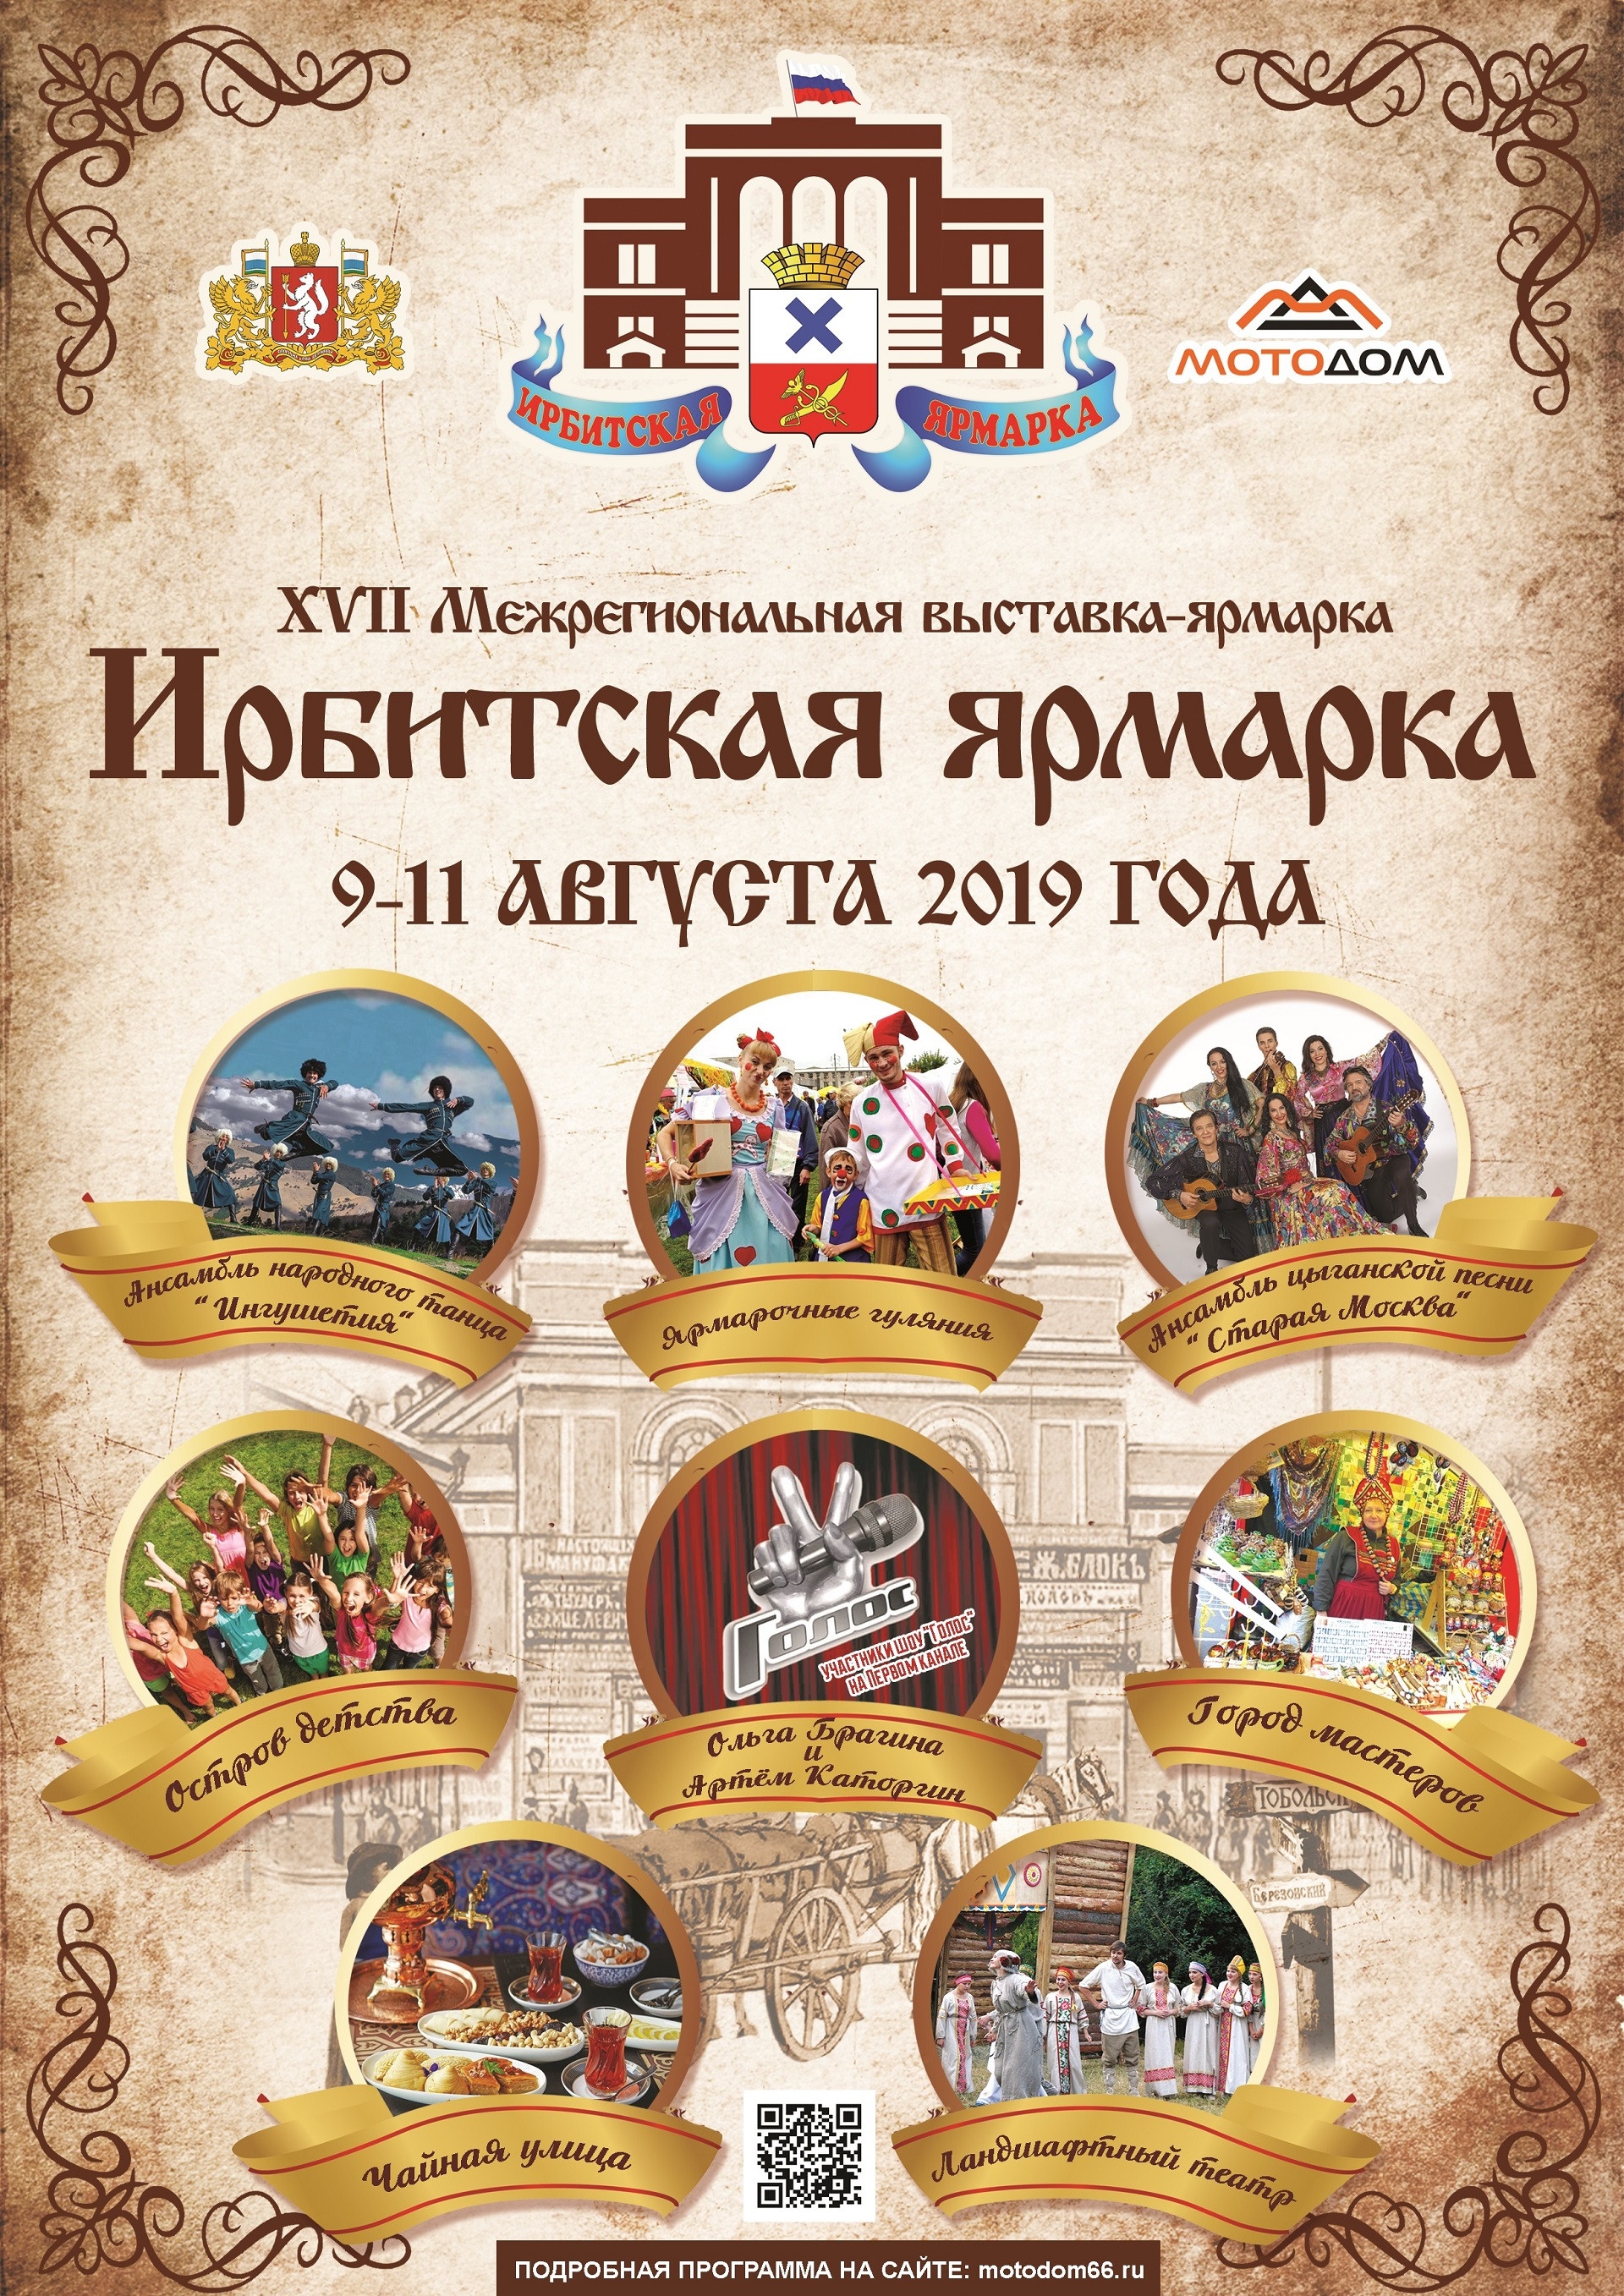 Ирбитская ярмарка 2019